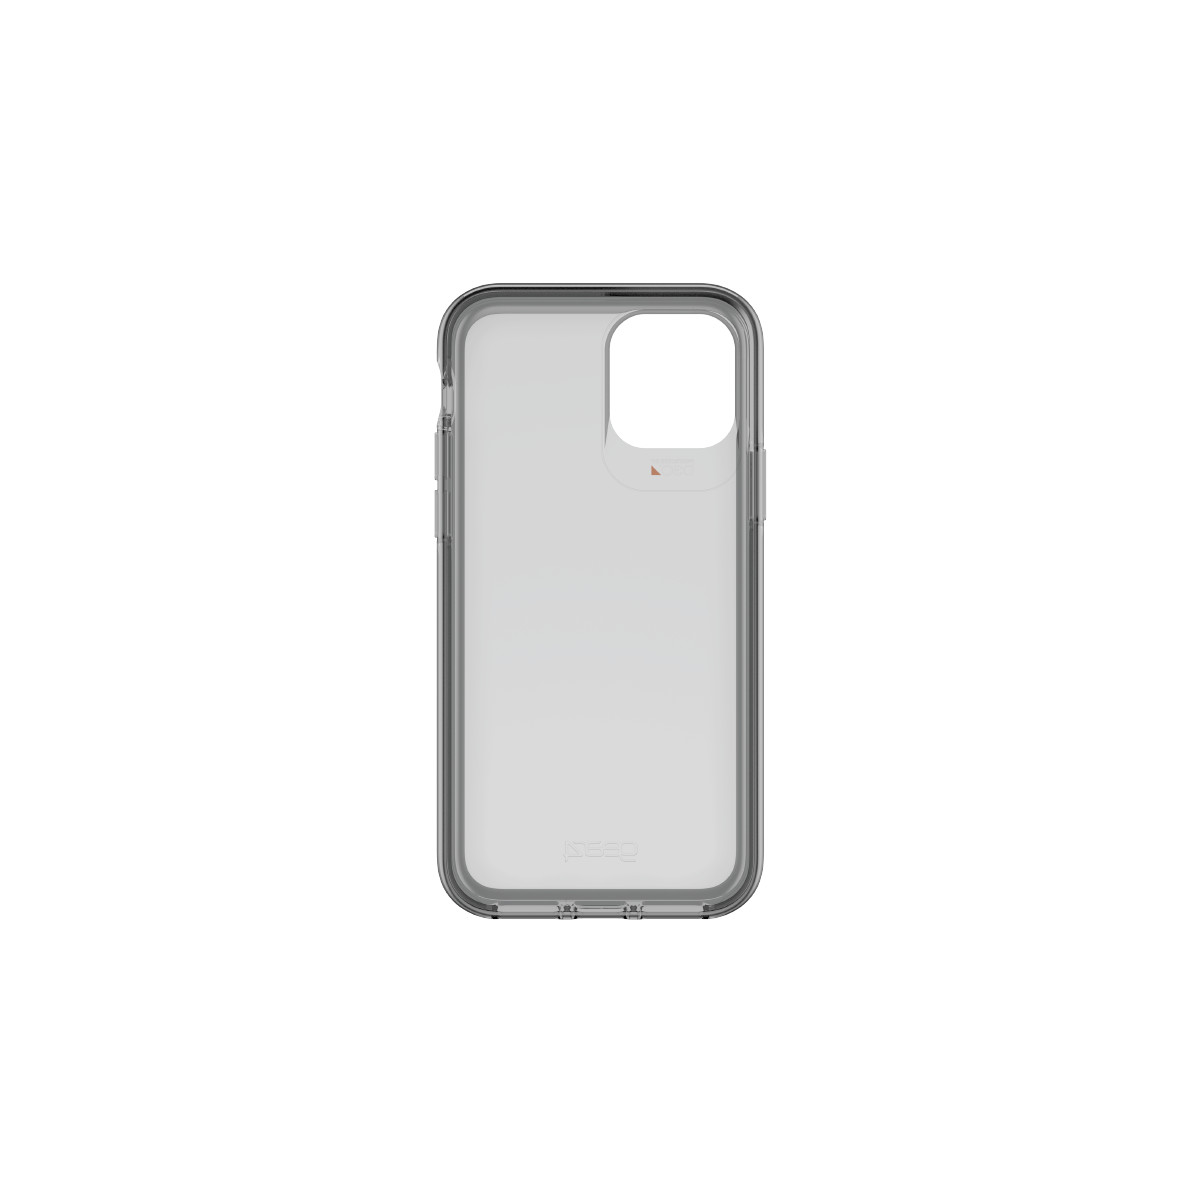 Ốp lưng chống sốc Gear4 D3O Hampton 4m cho iPhone 11 Pro / iPhone 11 Pro Max - Hàng chính hãng